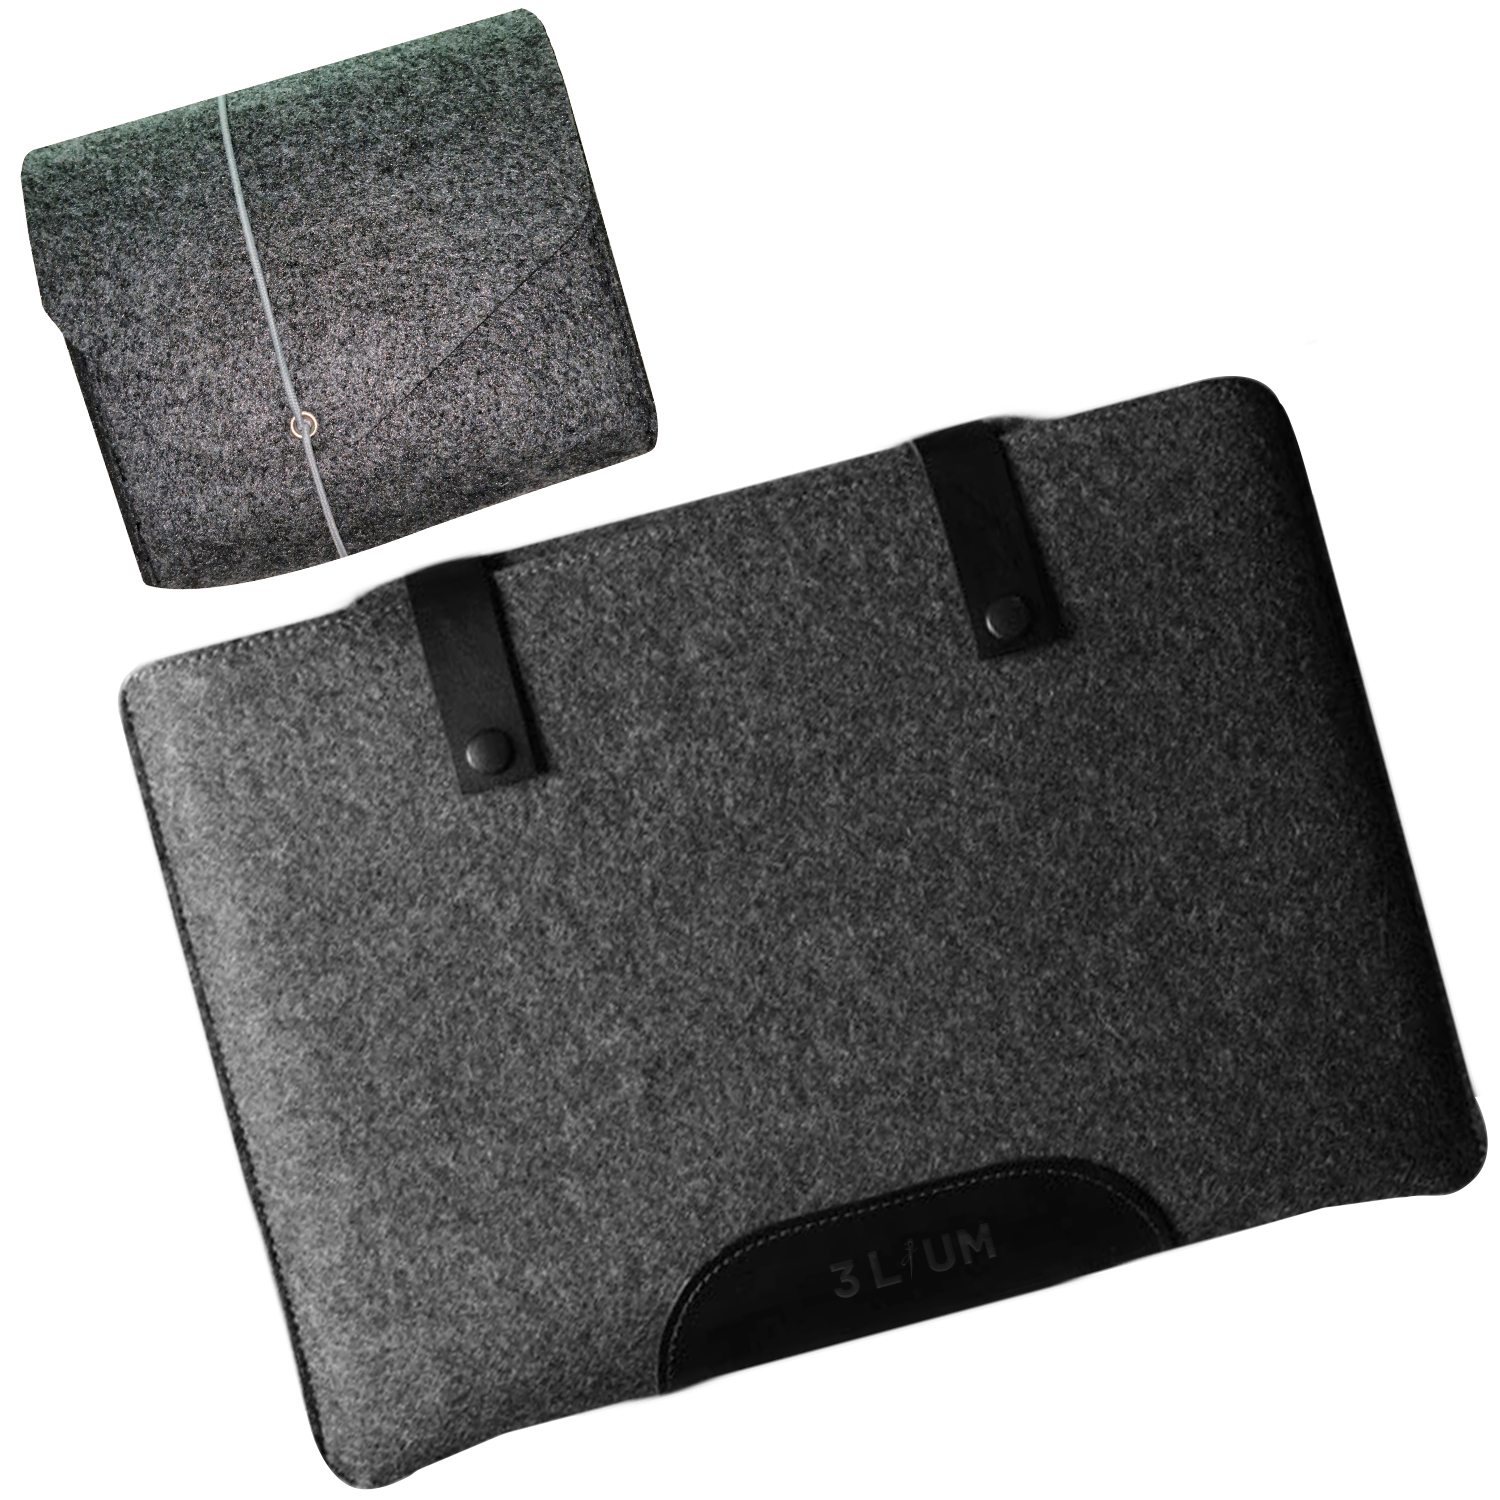 کاور لپ تاپ تری لیوم مدل Bellroy مناسب برای لپ تاپ 17.3 اینچی به همراه کیف لوازم جانبی